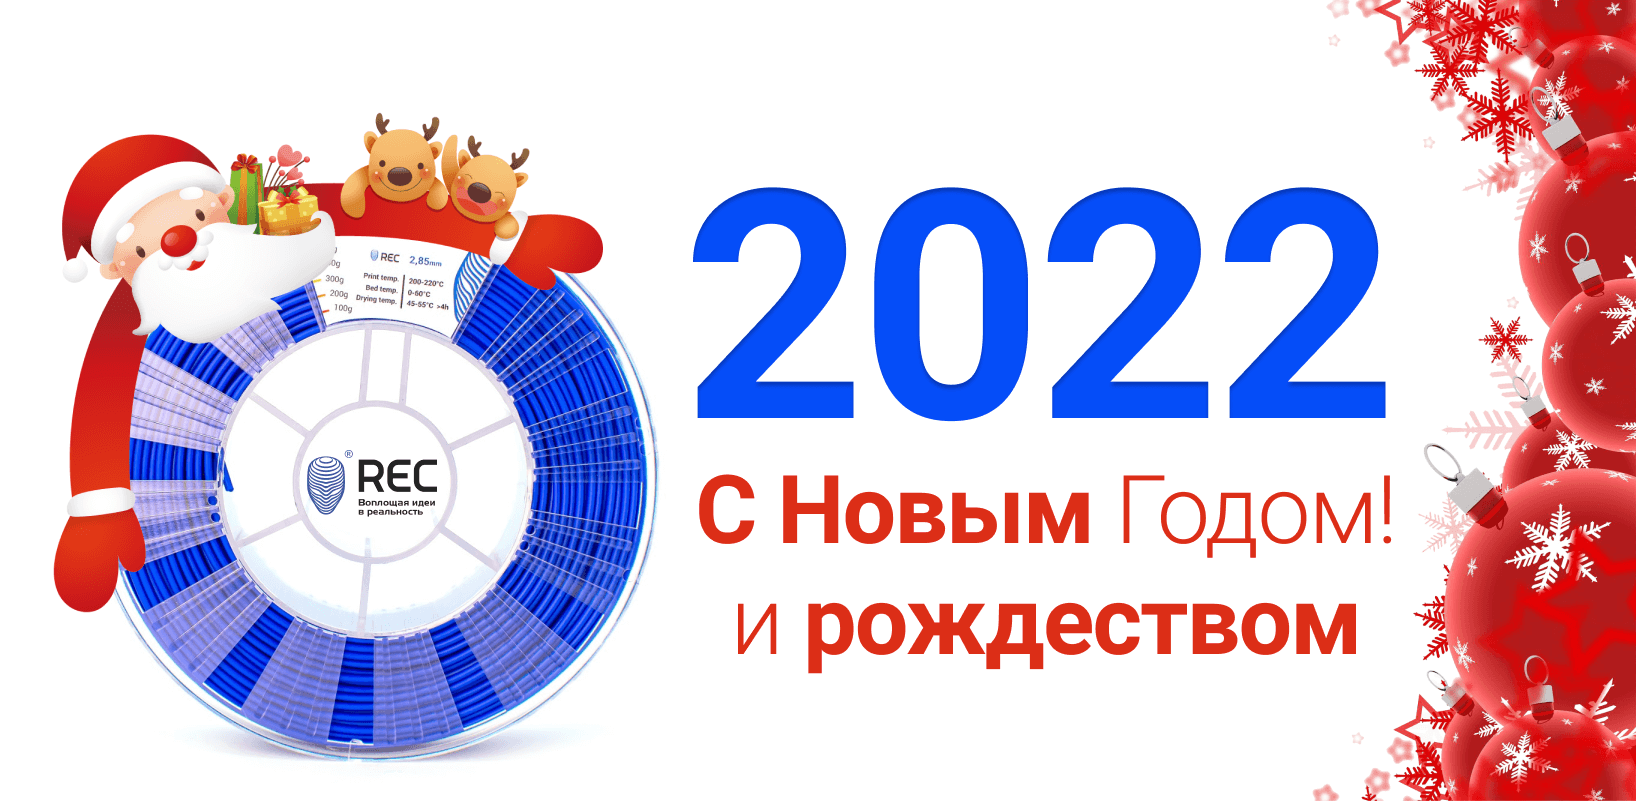 Новый год 2022. Новинки 2022 года. Печать с новым годом 2022. Спасибо 2022. Новинка 2022 год хит